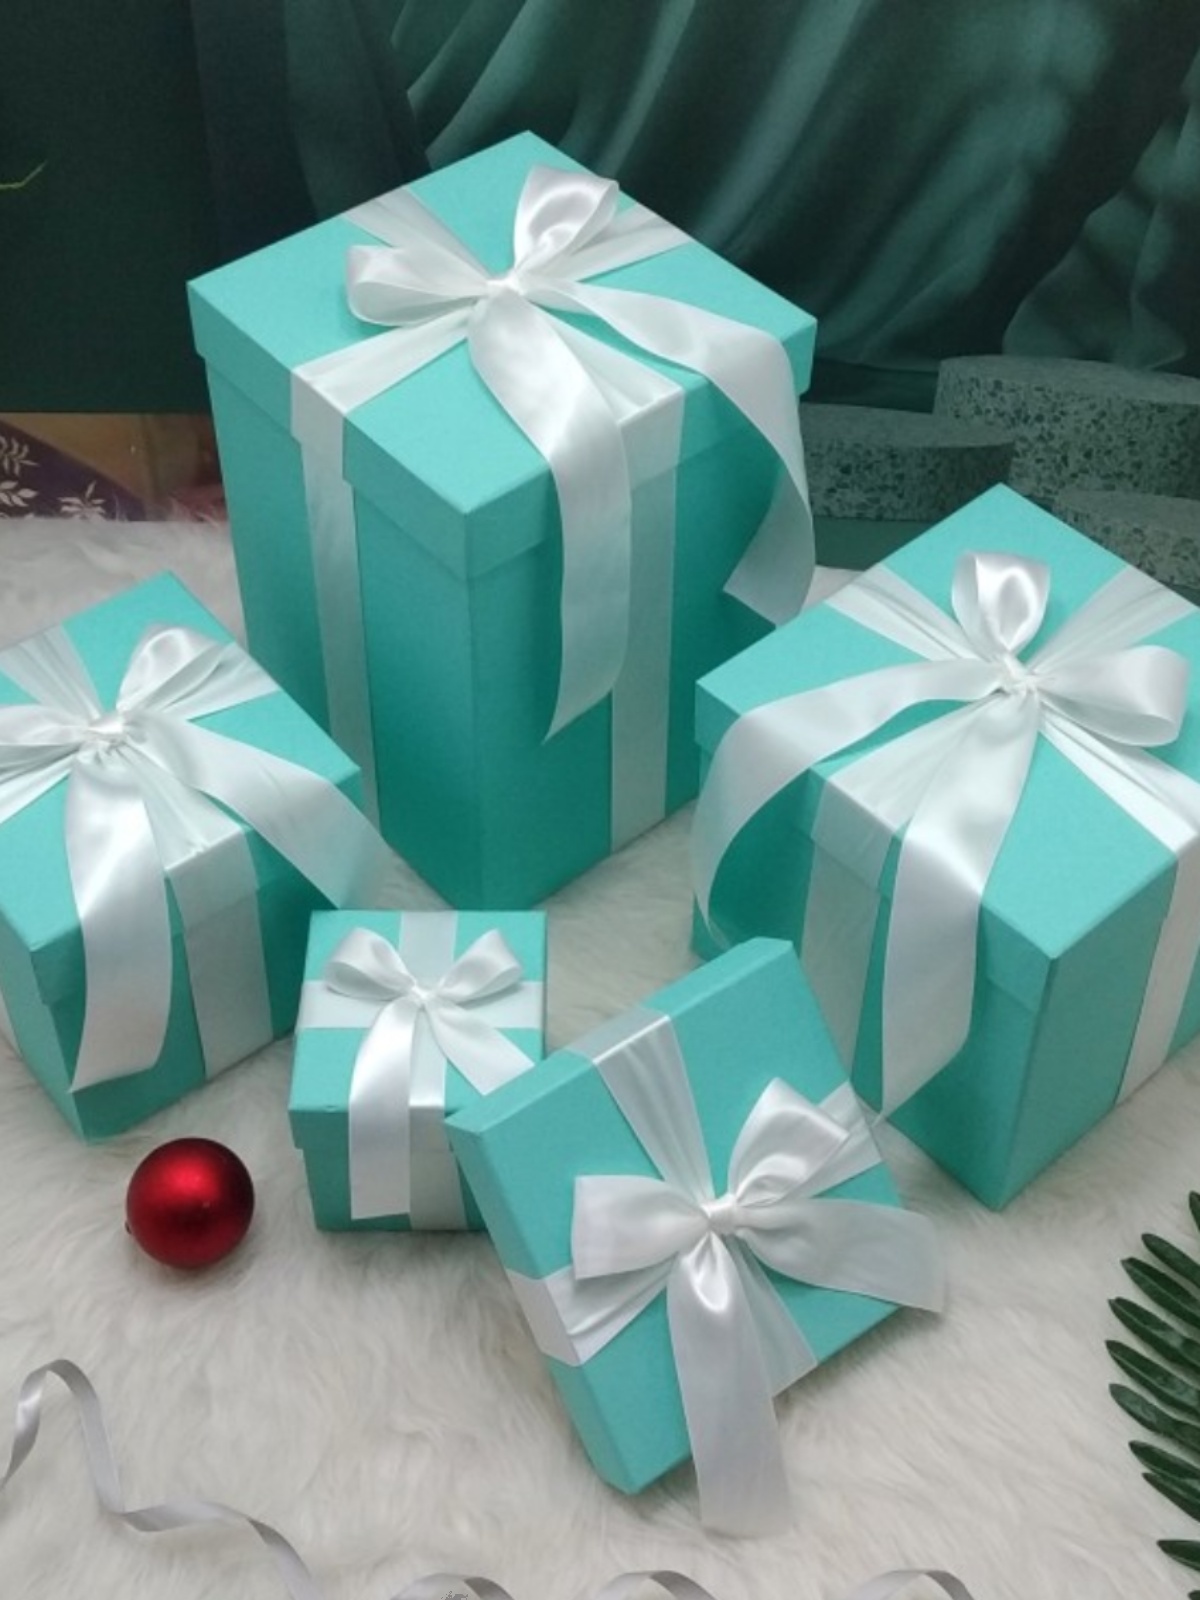 蒂芙尼正方形礼品盒圣诞节橱窗纸盒礼物包装盒定制盒拍照道具堆头